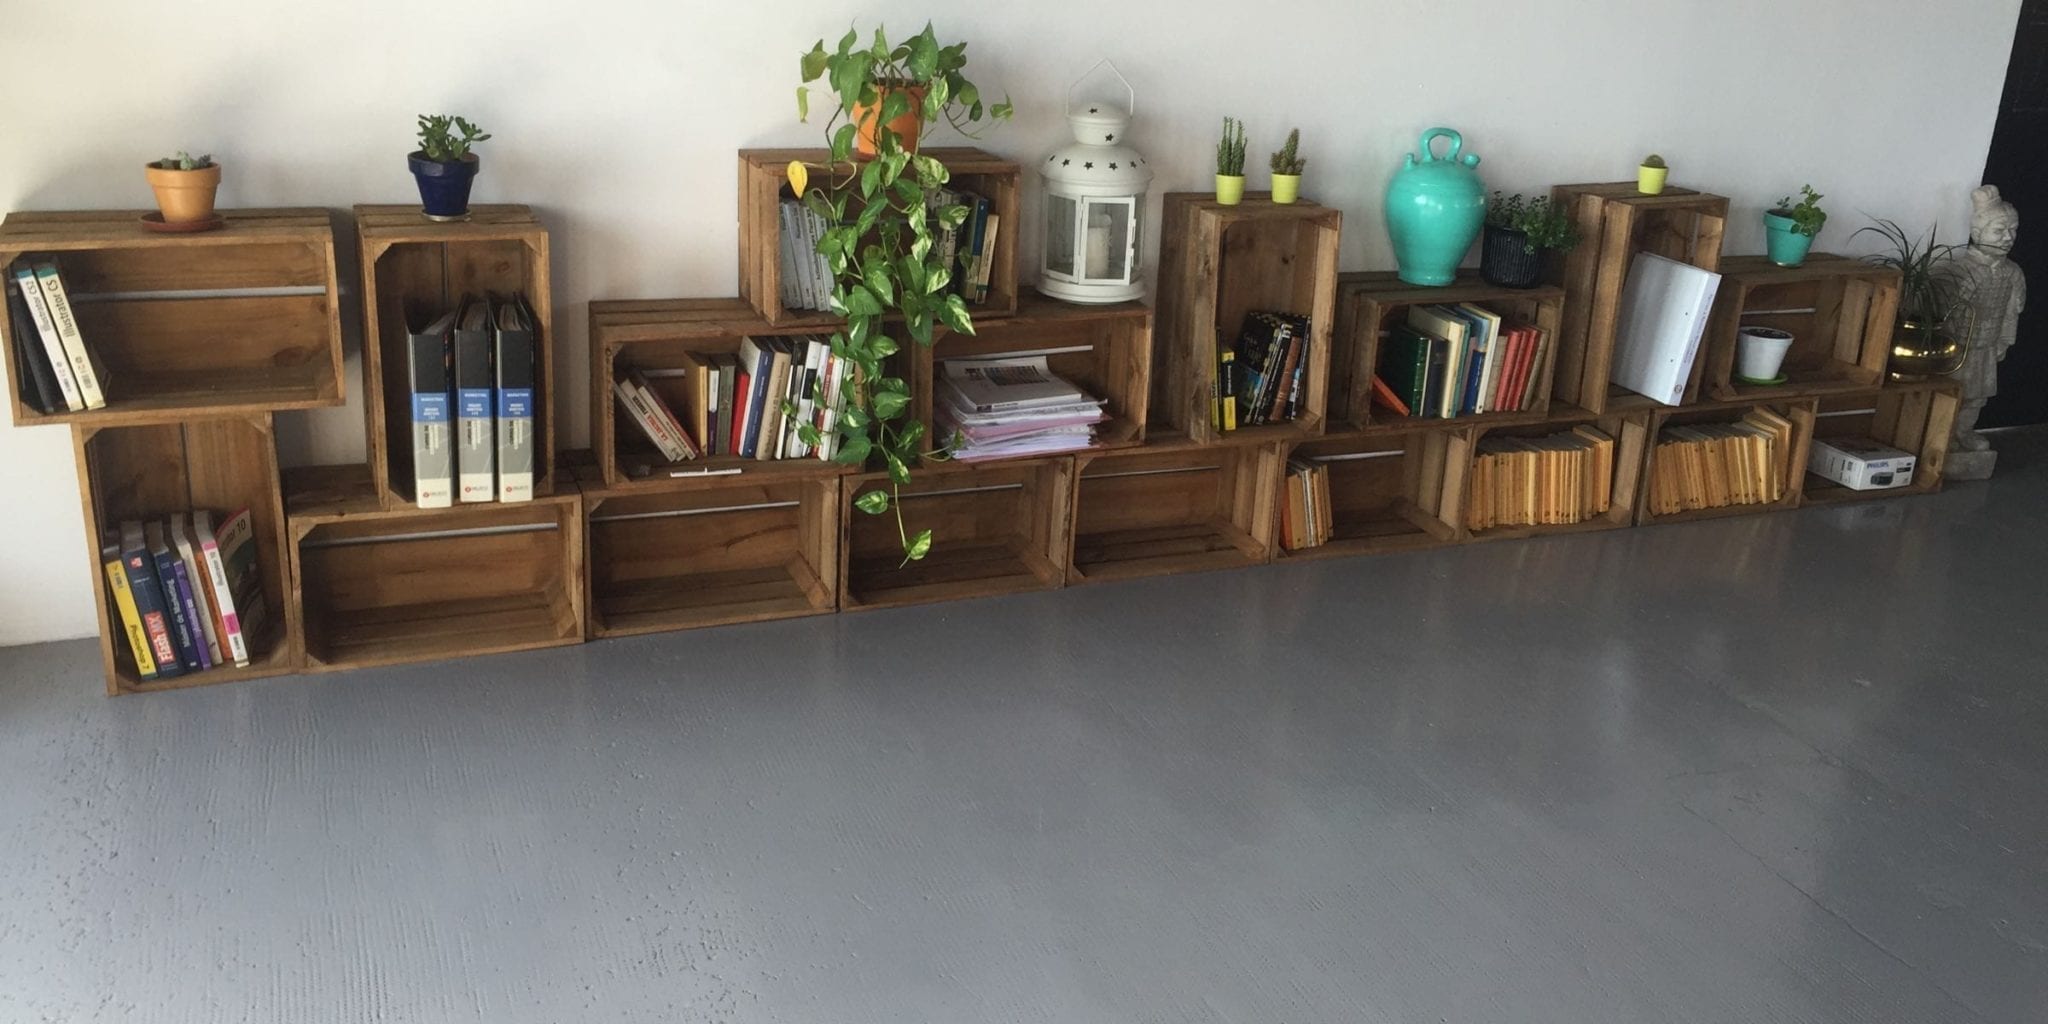 DIY: Decora tu casa con cajas de de madera | Hidraulik ı Alfombras vinílicas hidráulicas ı Design and clean spaces